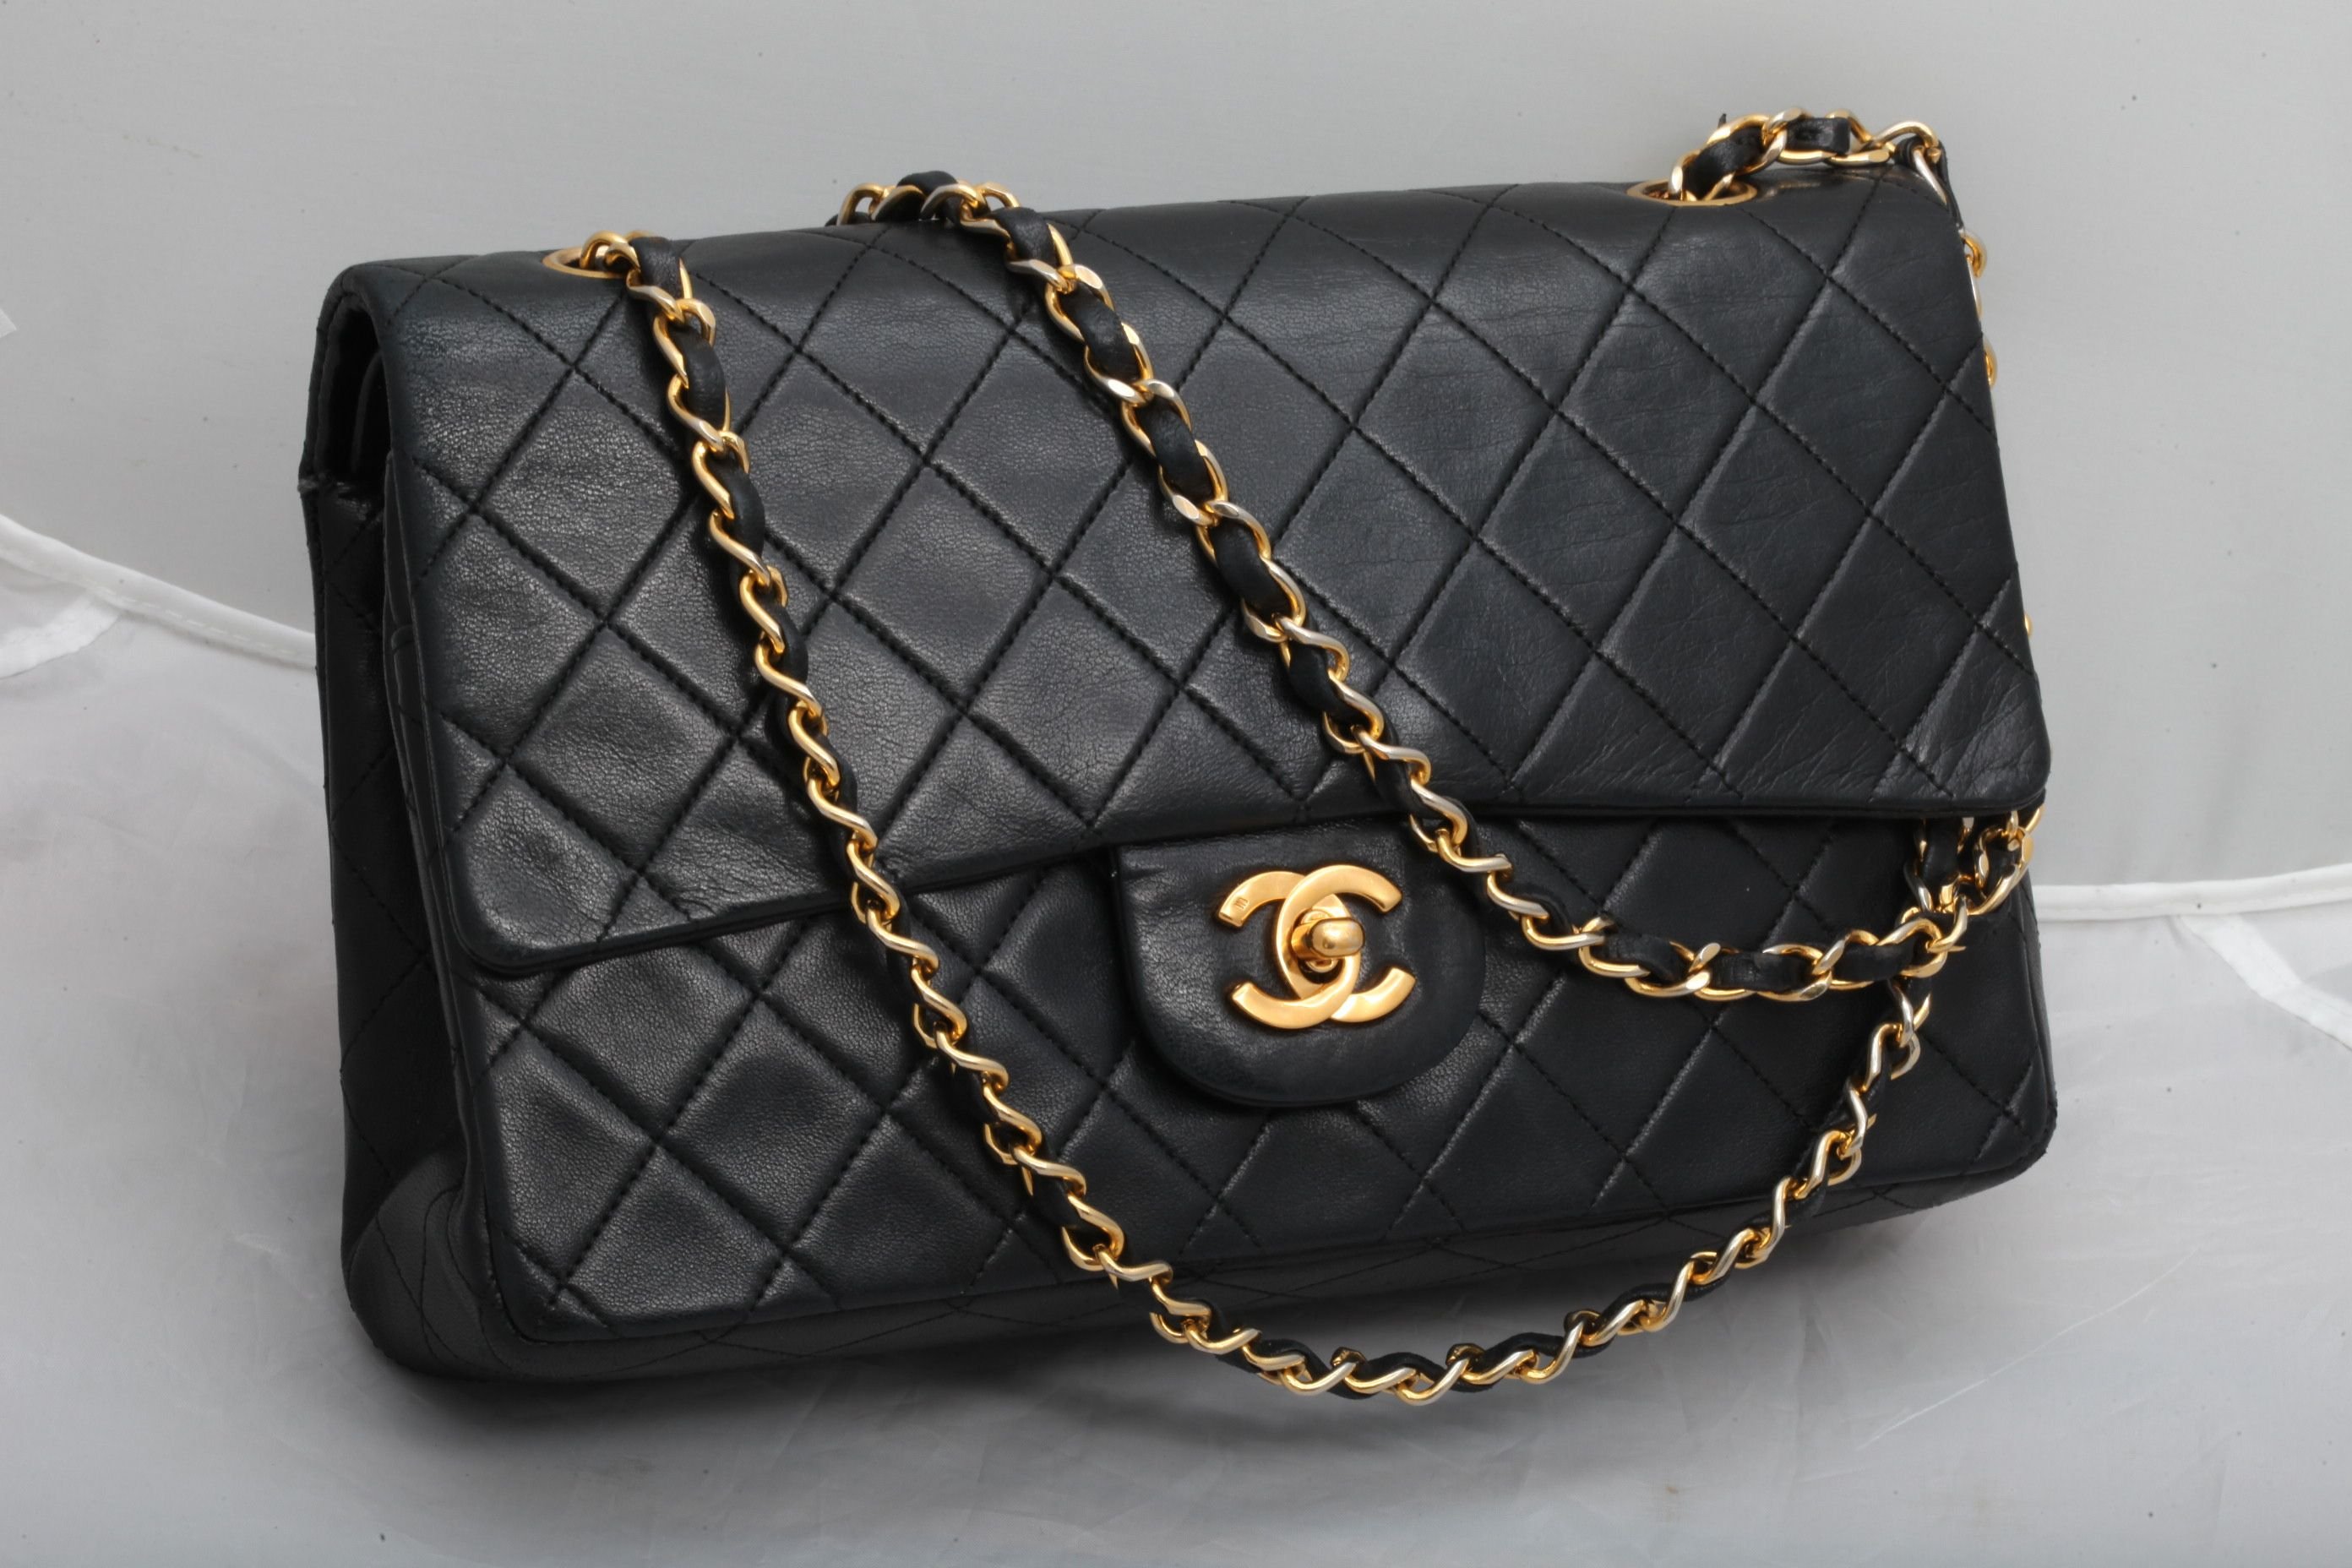 Сумка шанель карман улыбка. Сумка Шанель 2.55 вельвет. Коко Шанель сумка 2.55. Chanel 2.55 сумка. Bag 2.55 Coco Chanel.